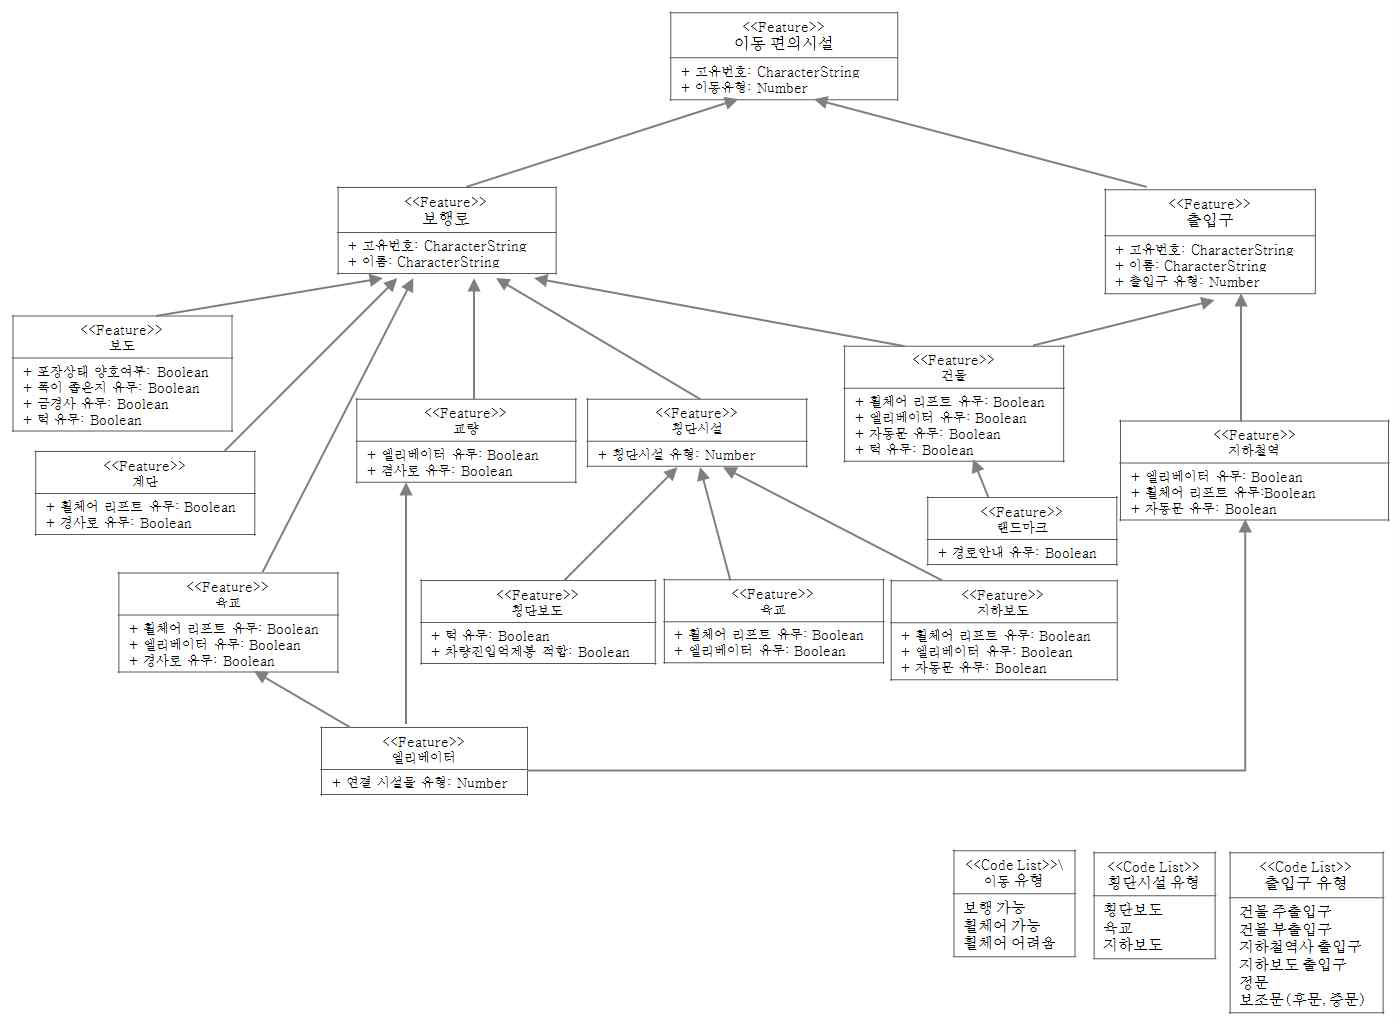 본 과제의 VGI 플랫폼에서 구축될 장애인용 네트워크 데이터 모델